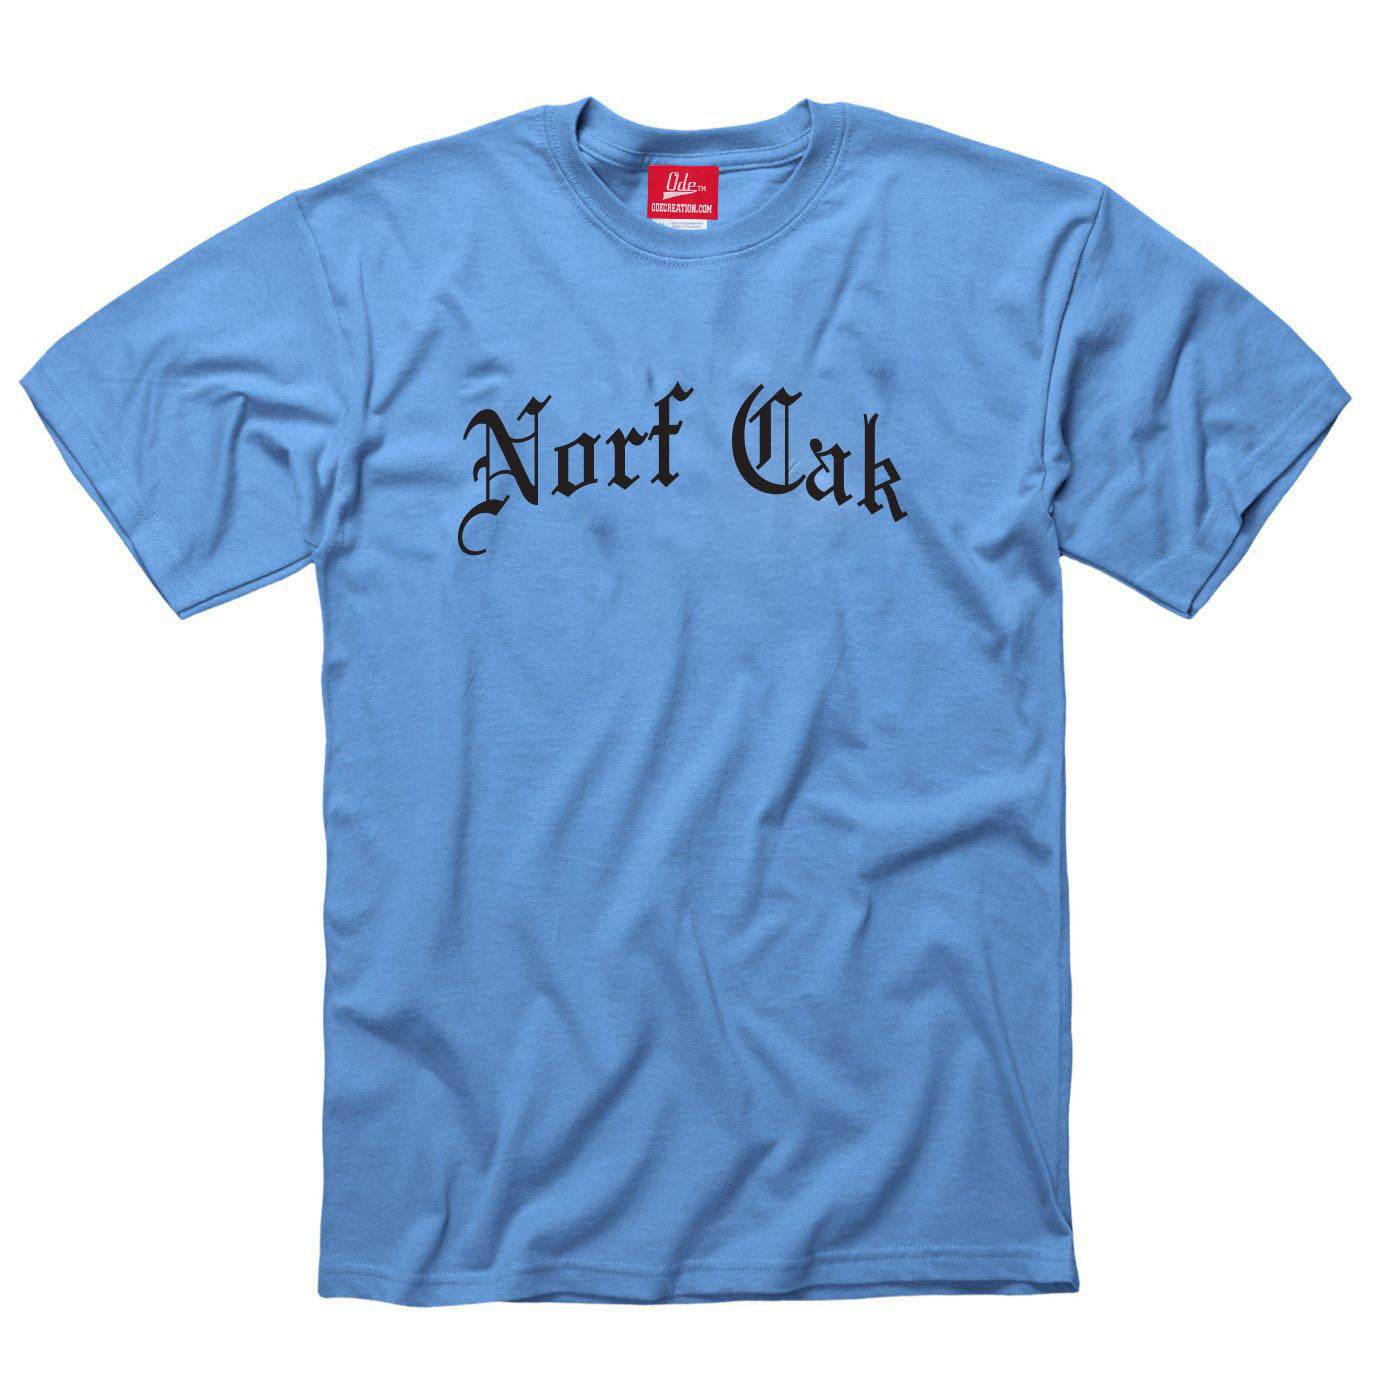 Norf Cak T-shirt- Sky Blue